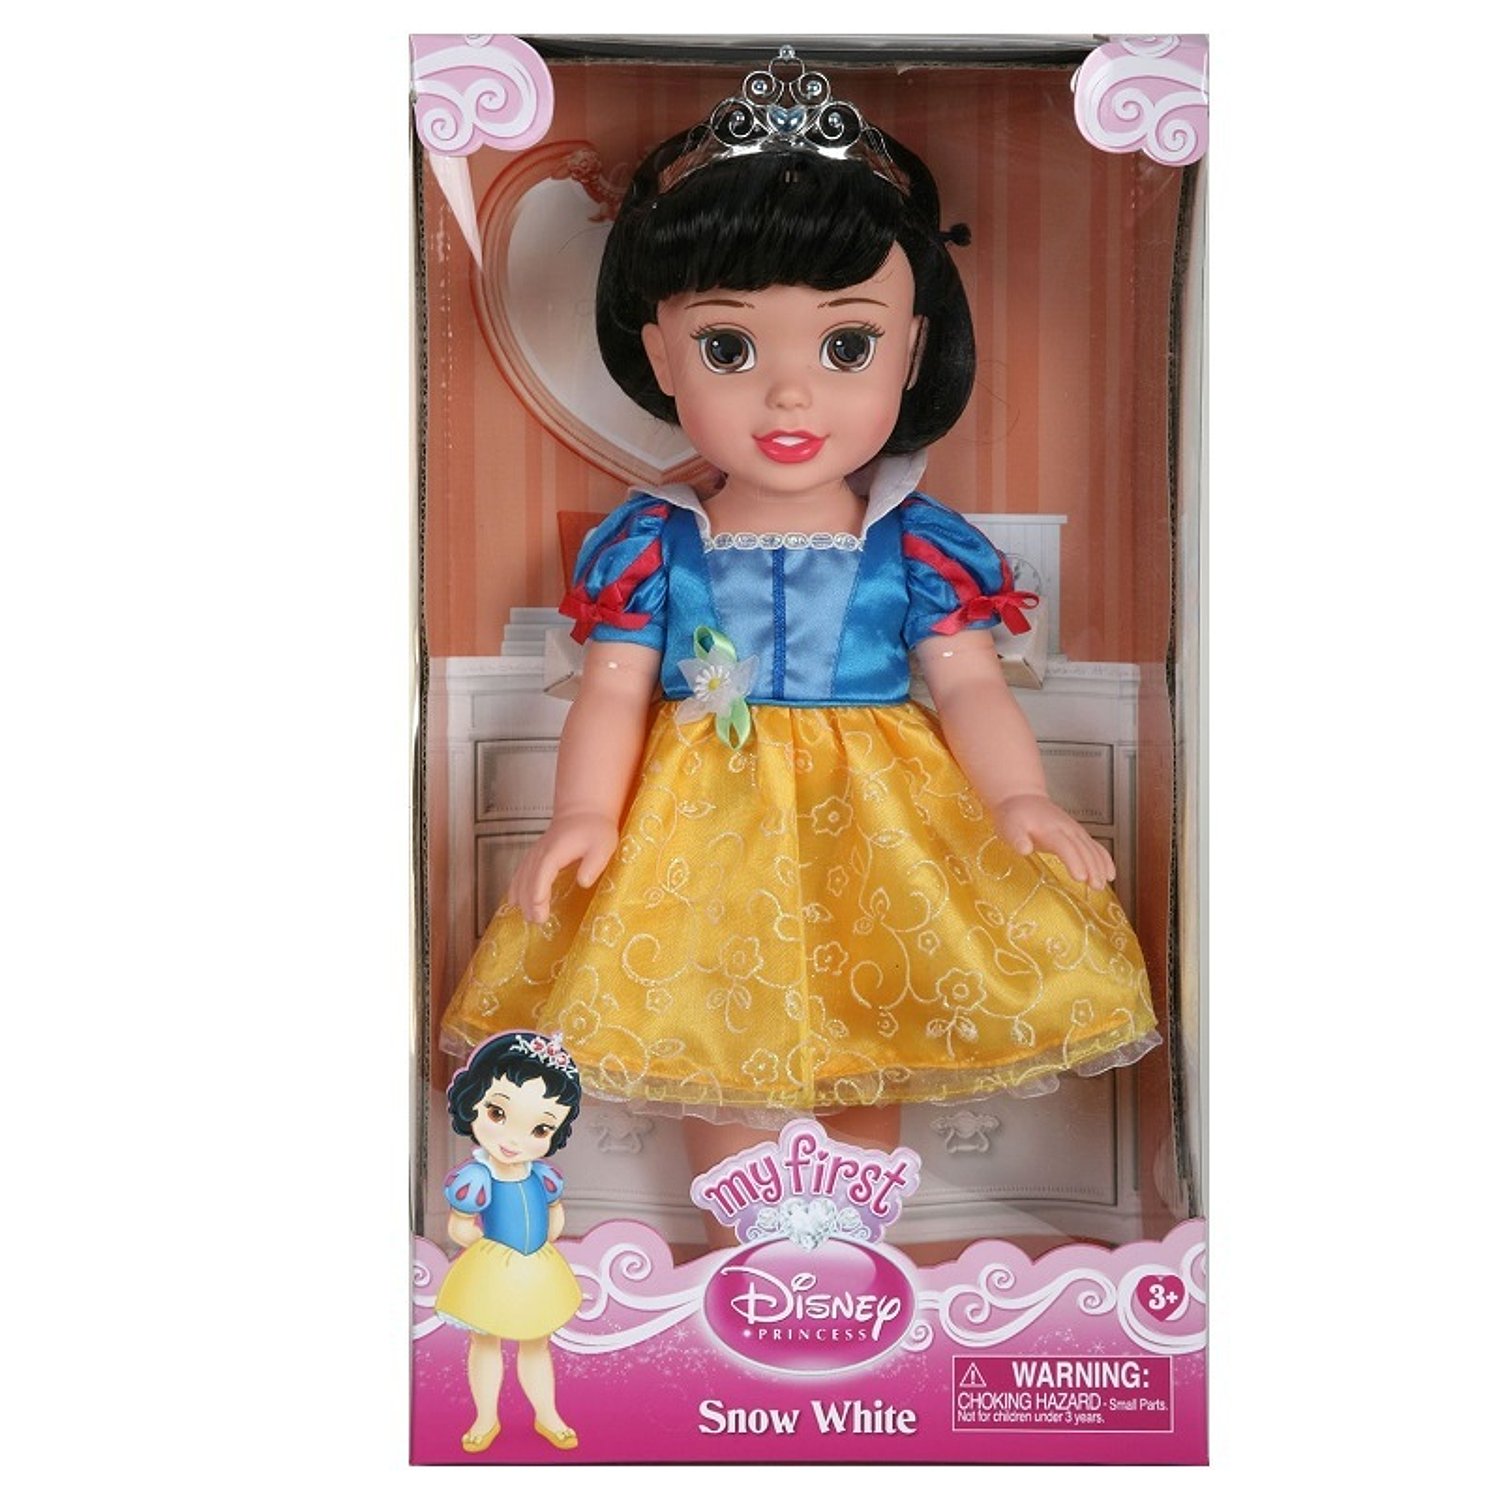 Принцесса малышка s класса. Кукла 31 см принцесса Дисней малышка, 751170. Кукла Disney принцесса малышка 31 см 75122 751170. Кукла Белоснежка принцесса малышка Дисней. Кукла 31 см принцессы Дисней малышка с украшениями, 791820.